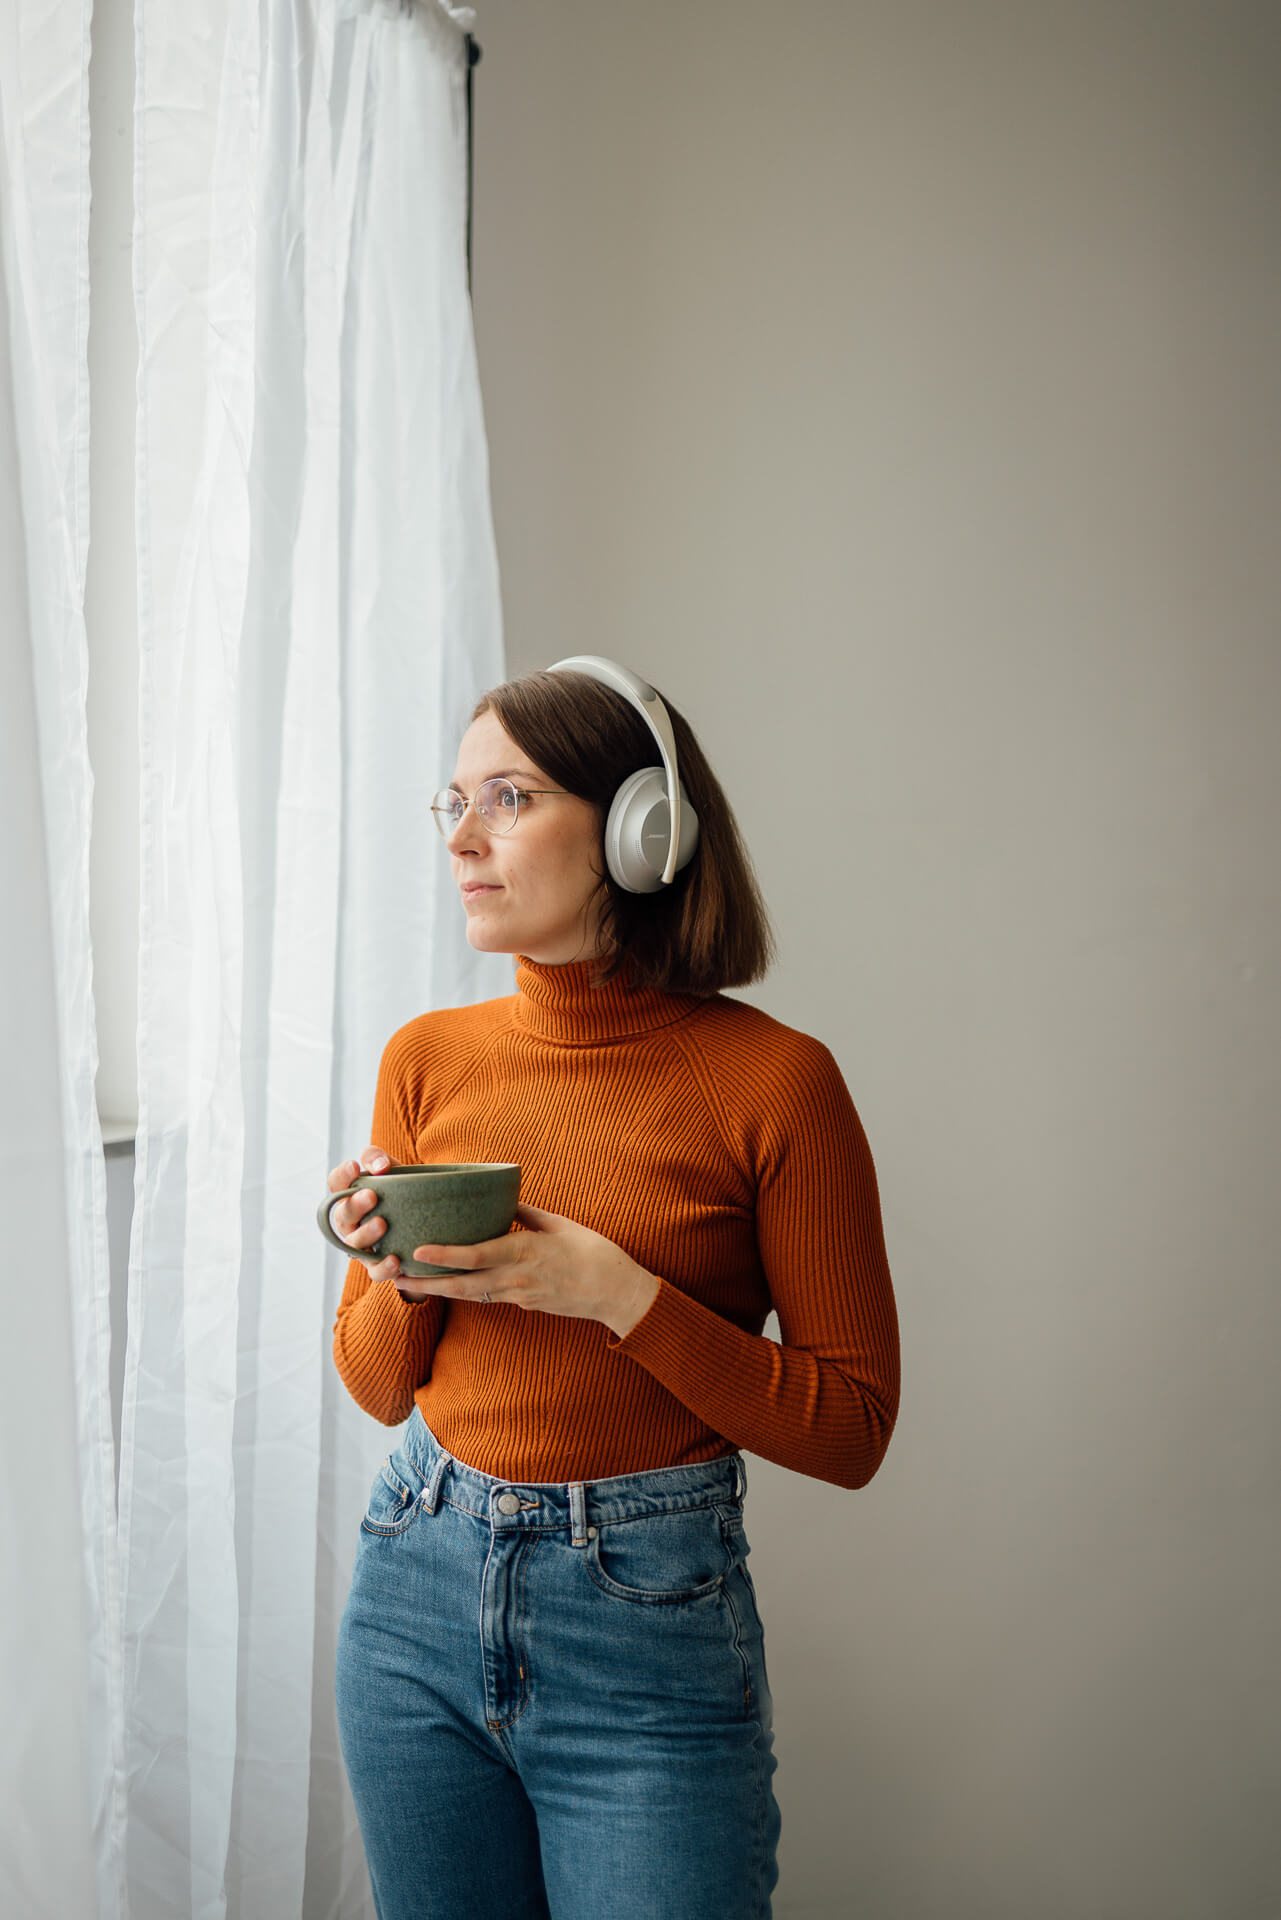 Portrait einer Frau die mit Kopfhörern und einer Tasse Tee am Fenster steht. Sie hört Musik. Das Bild ist während eines Brand Shoots entstanden. 